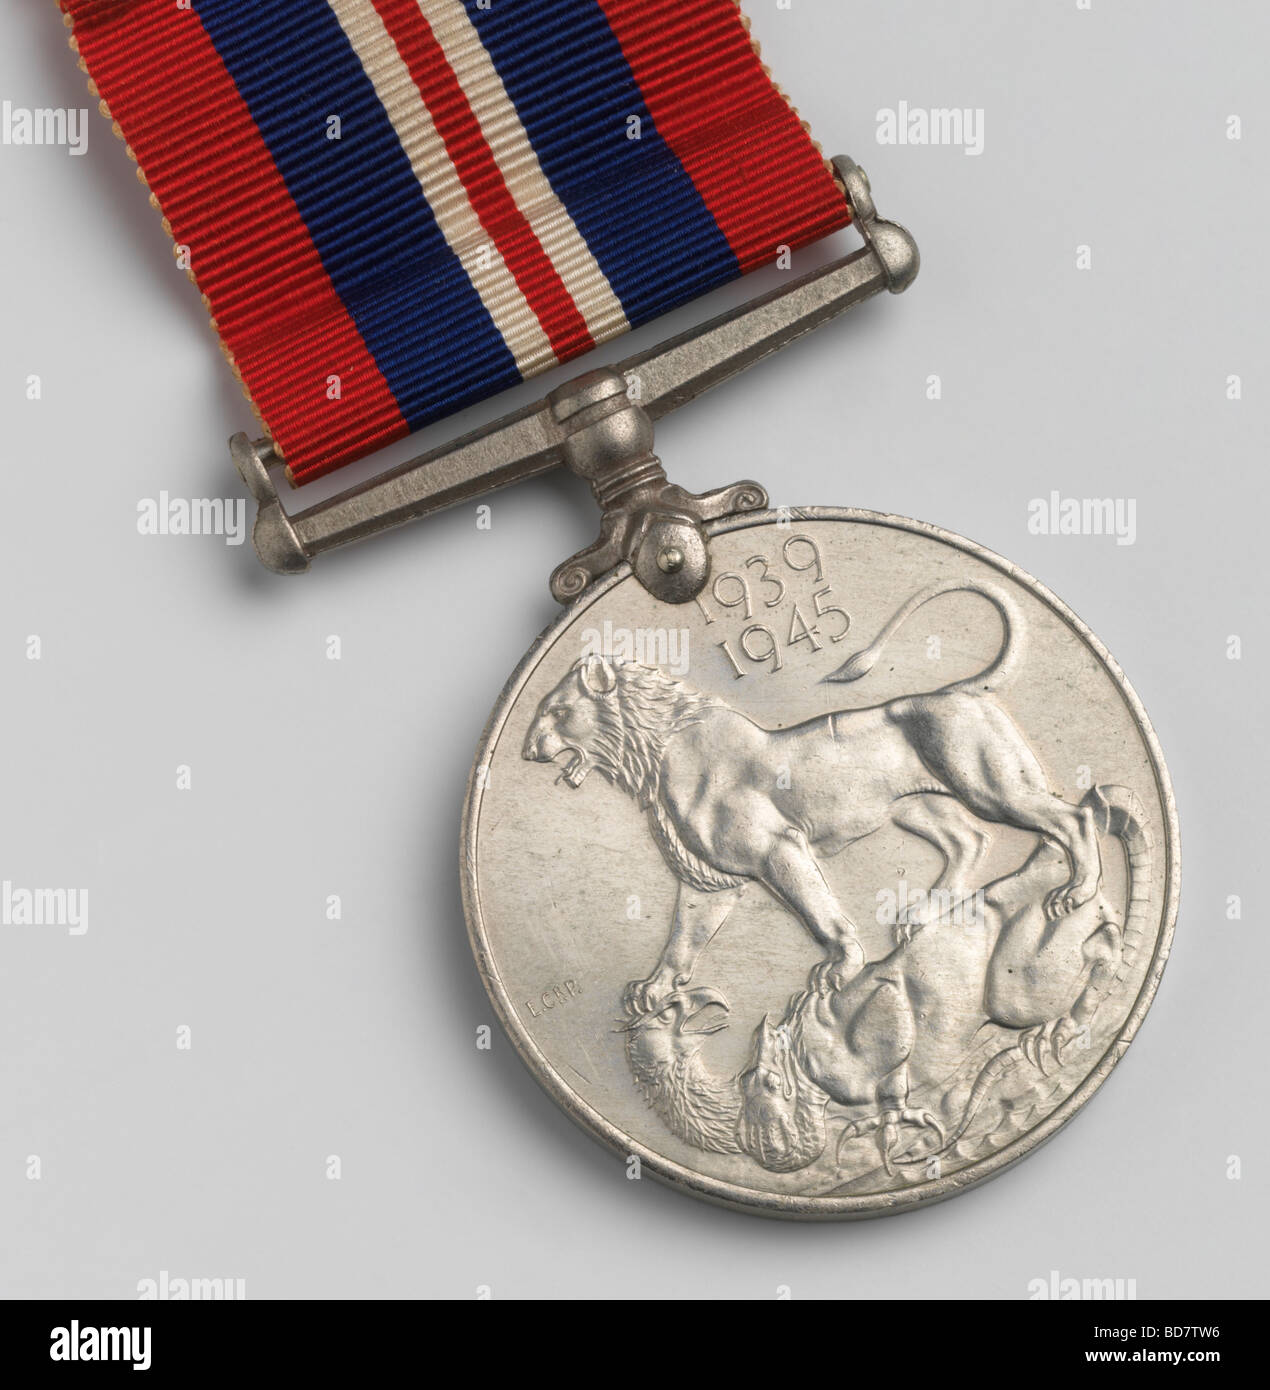 Das Gegenteil von einem britischen und Commonwealth-Service-Medaille aus dem zweiten Weltkrieg Stockfoto